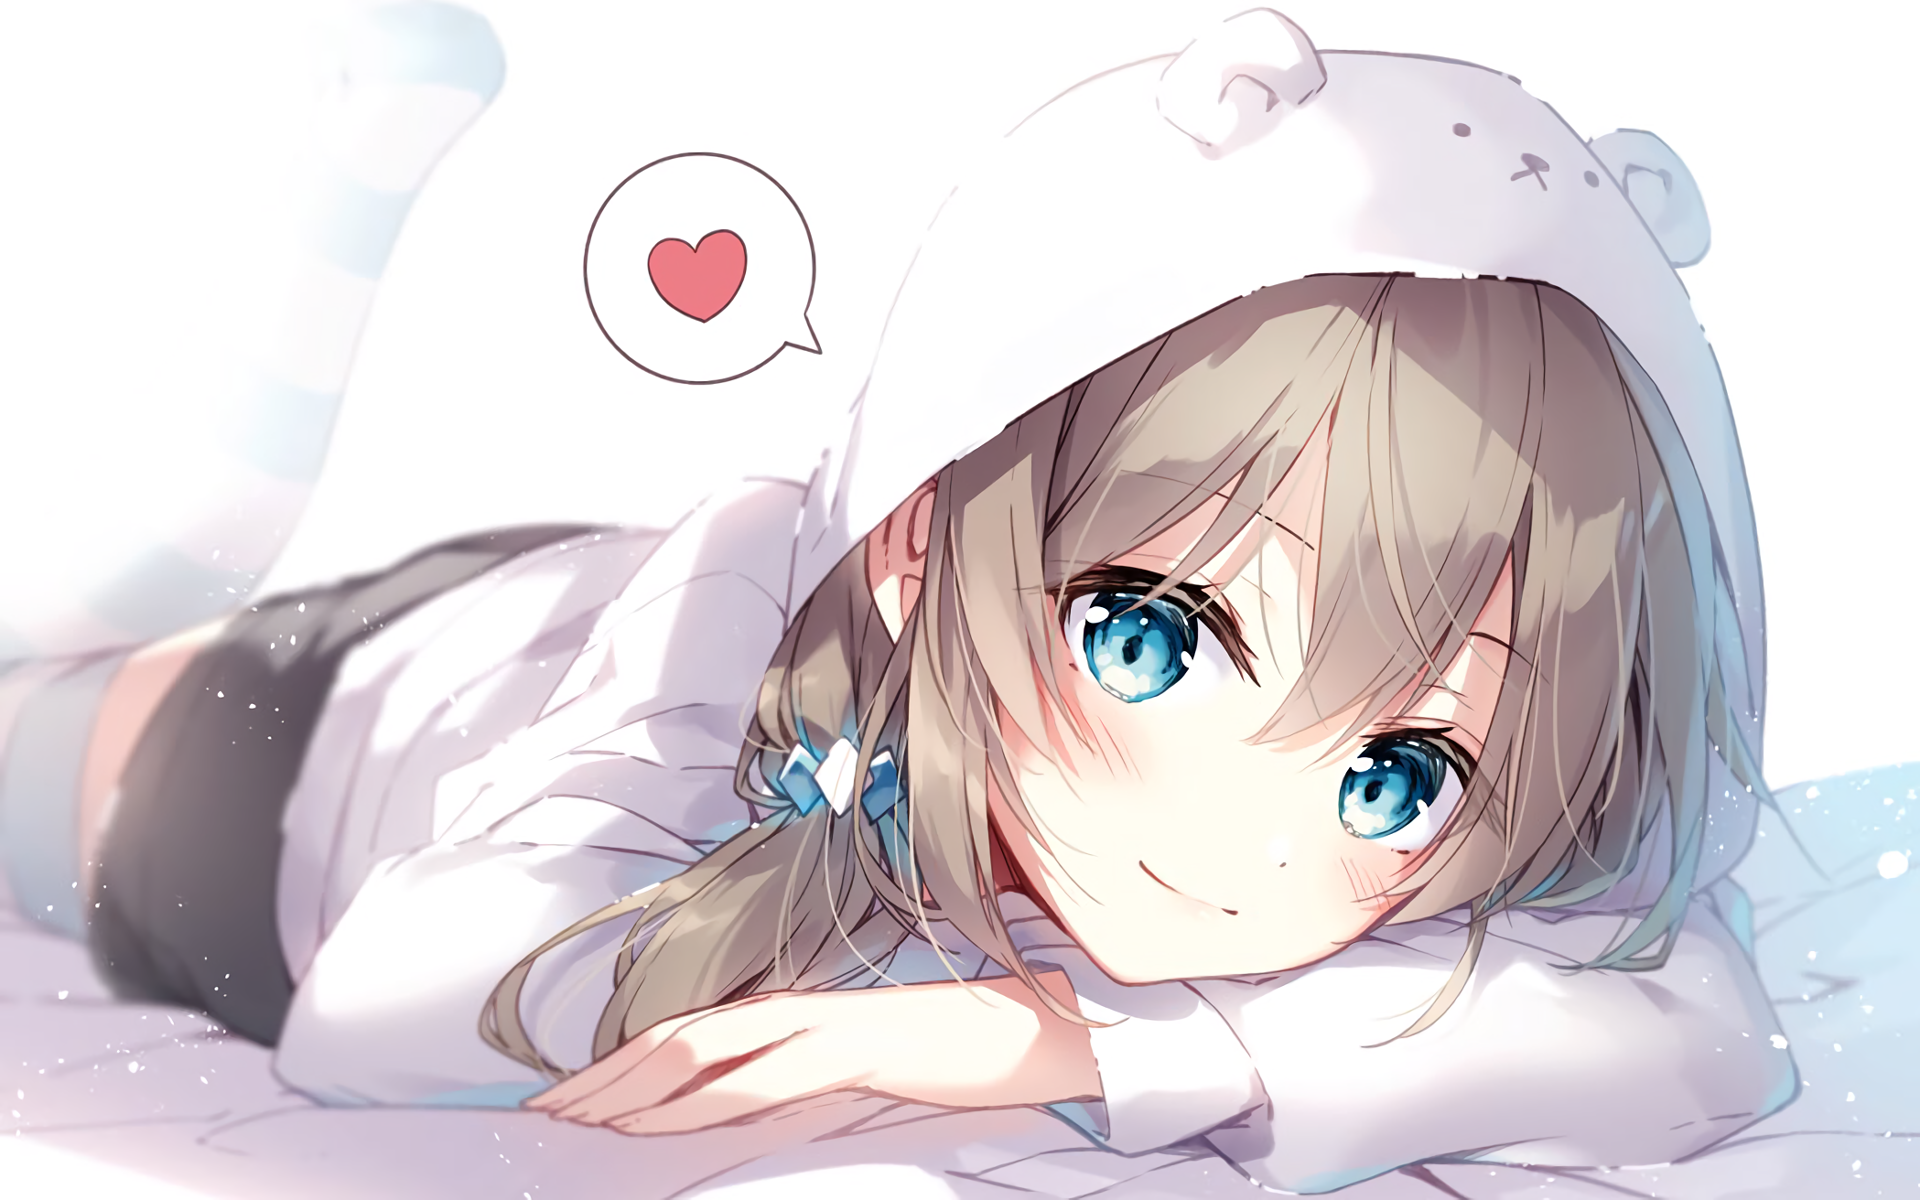 Good Morning Anime Sleepy Wake Up GIF  GIFDBcom